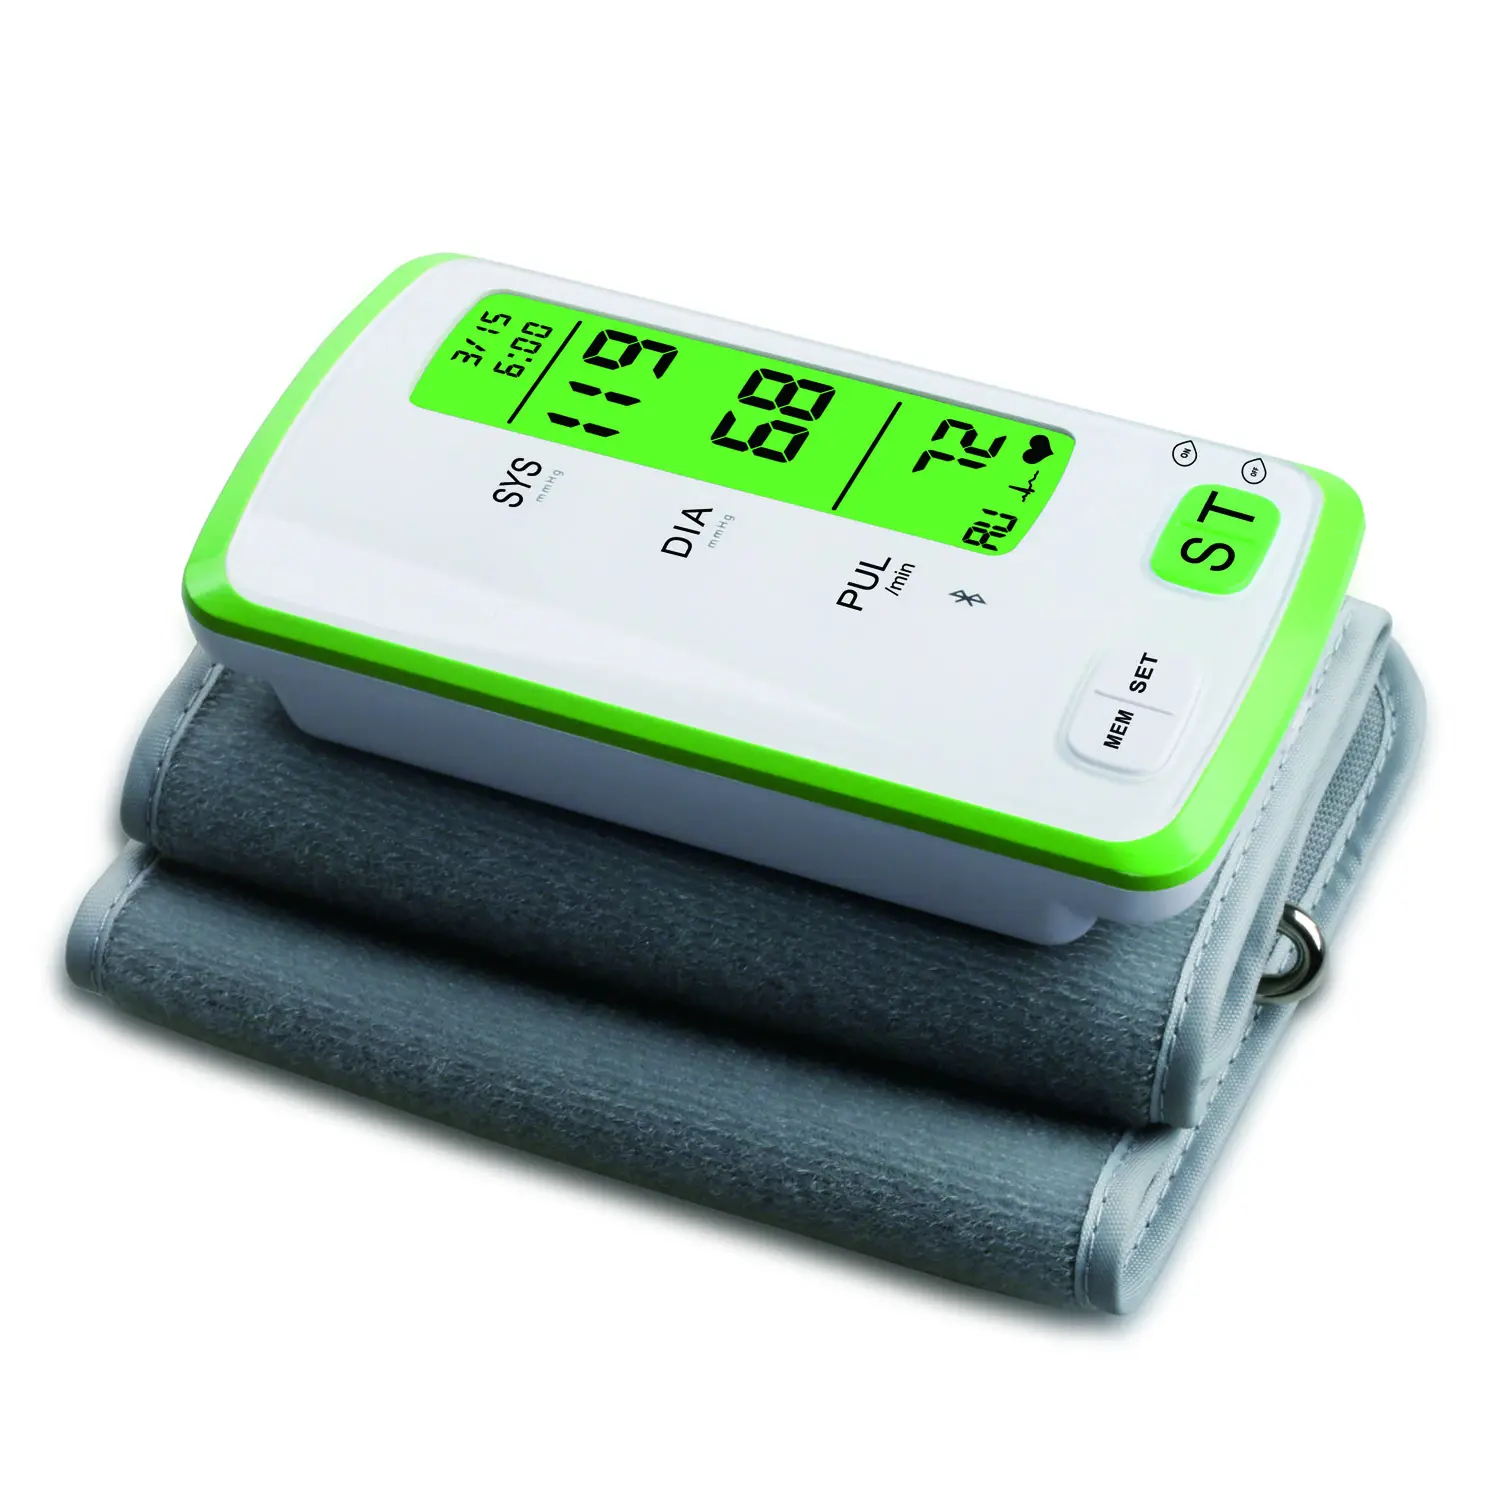 Fabricante Fivela fixa MANGUITO monitor de pressão arterial digital convinece